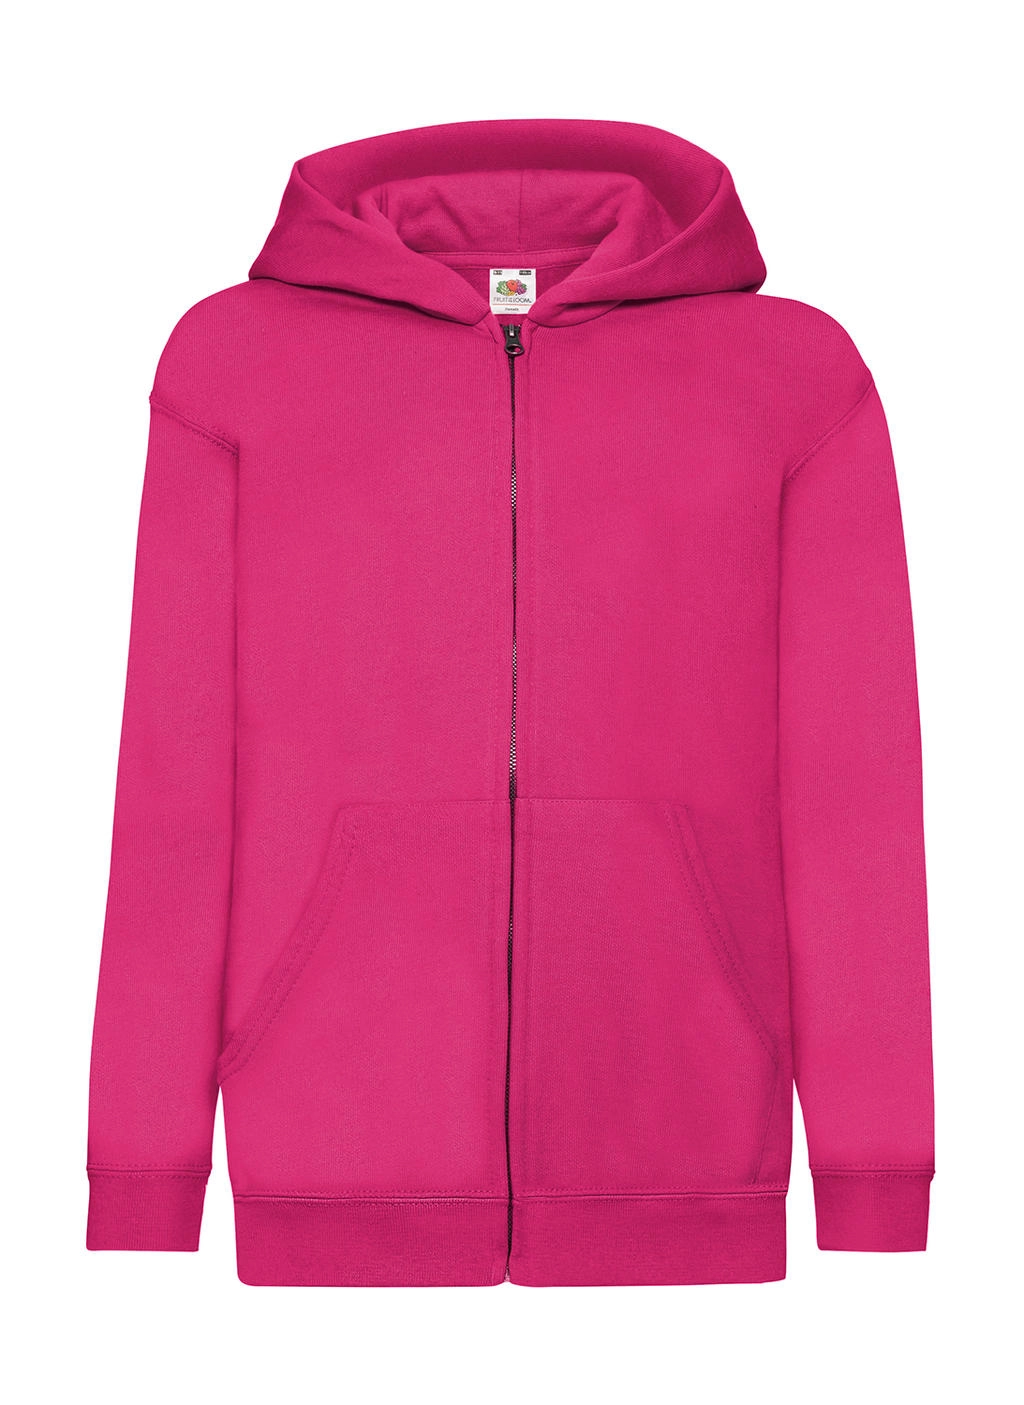 Kids` Classic Hooded Sweat Jacket zum Besticken und Bedrucken in der Farbe Fuchsia mit Ihren Logo, Schriftzug oder Motiv.